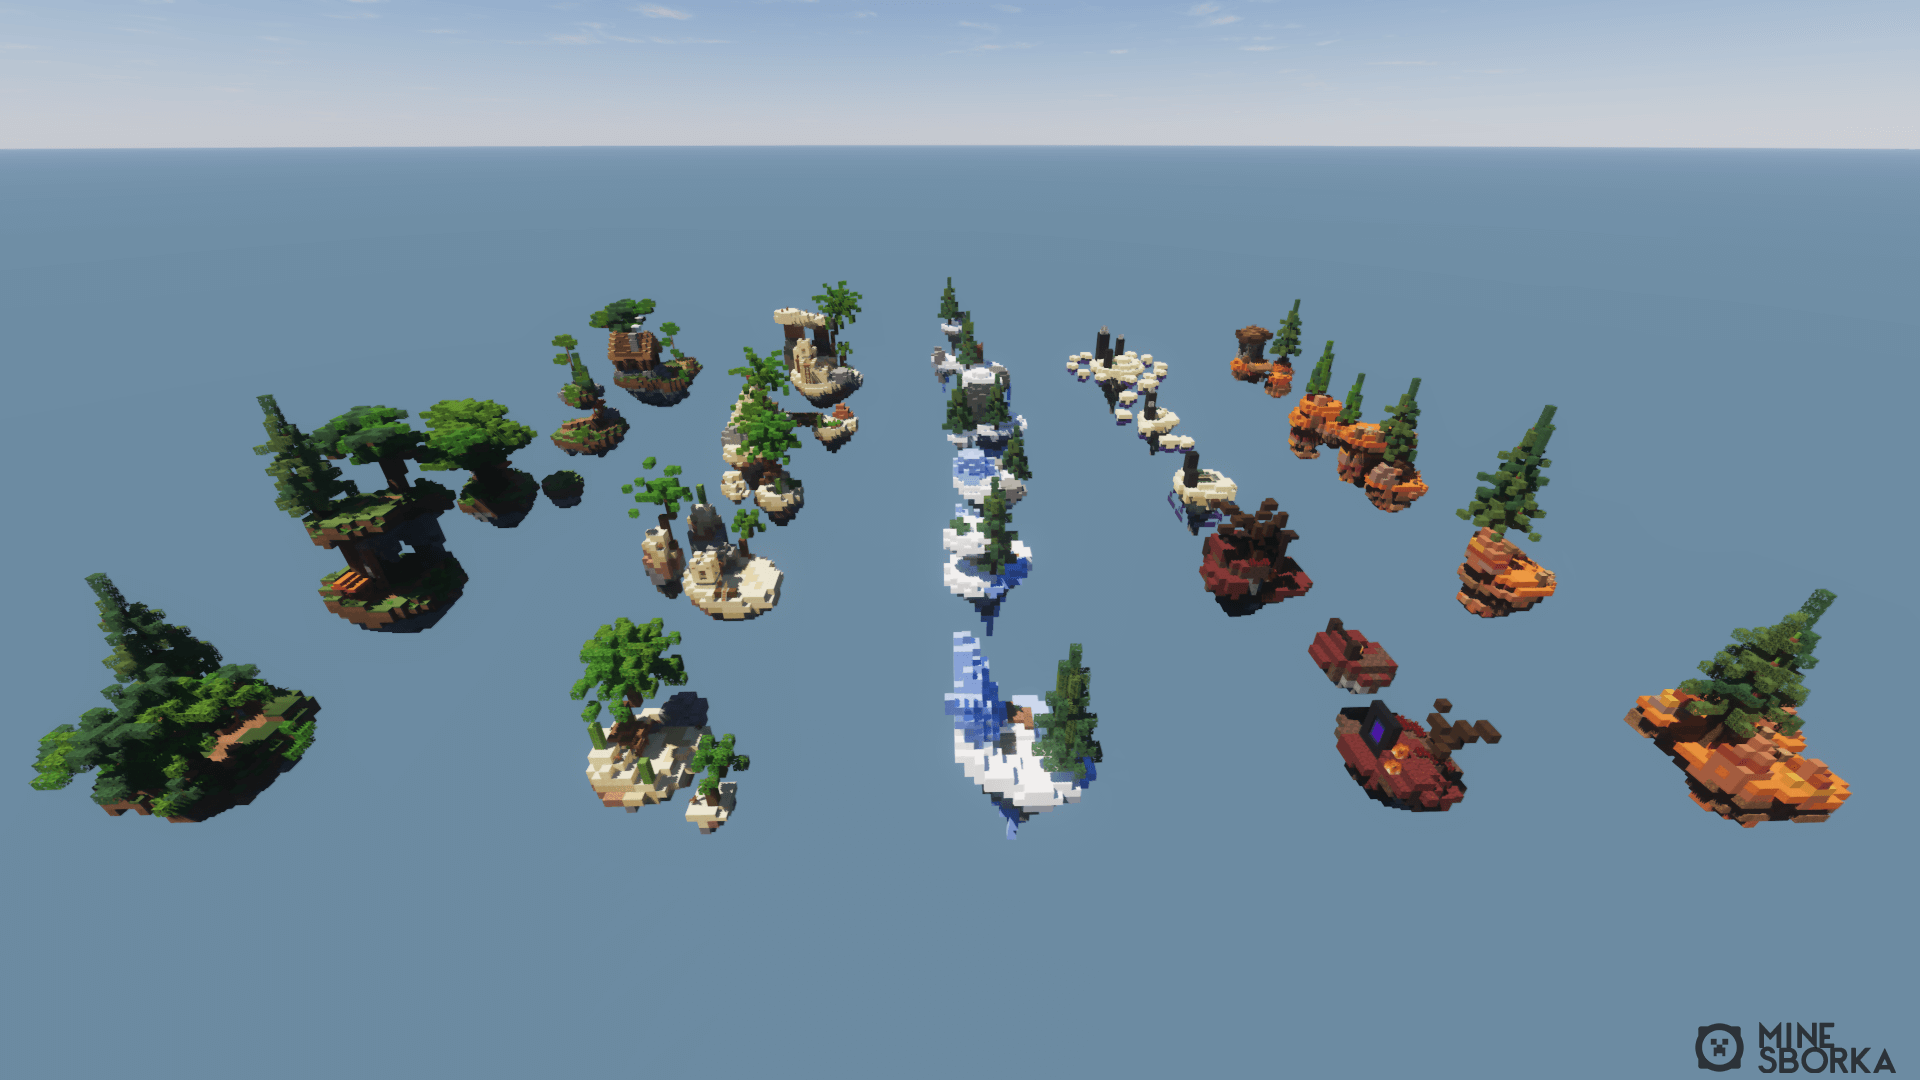 Сборник из 10 островов SkyBlock для сервера Minecraft